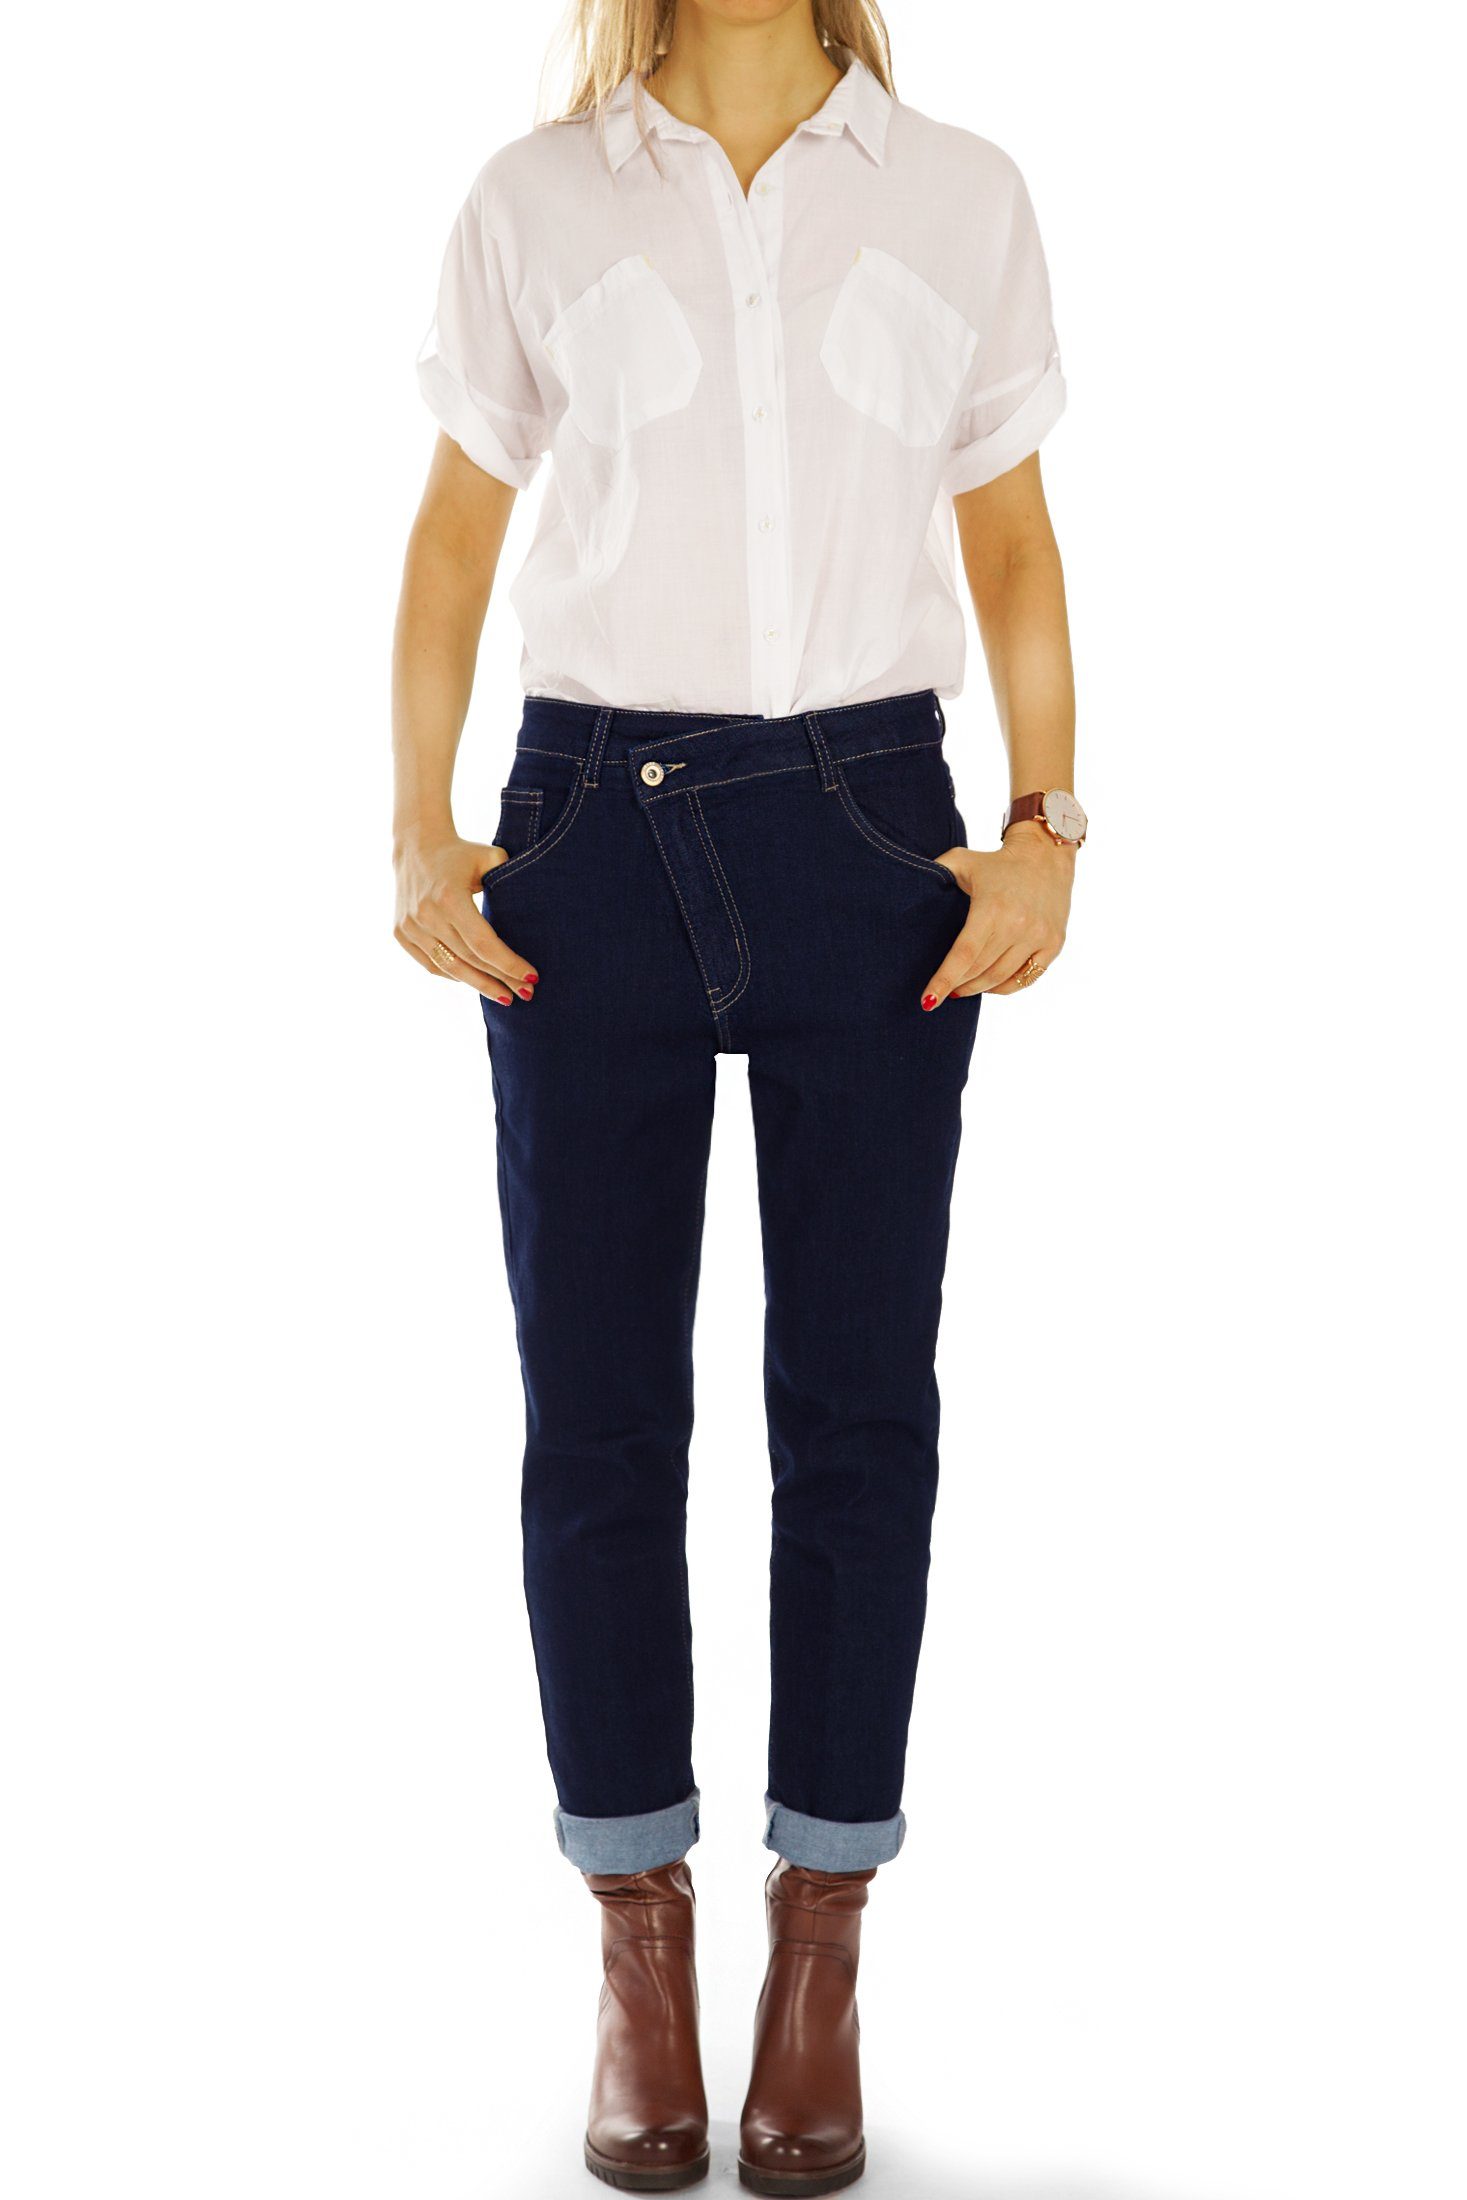 j3f mit Mom-Jeans styled Waist Stretch-Anteil, Jeans Boyfriend Hosen Damen Reißverschluss be Medium Mom 5-Pocket-Style, - Jeans - schräger